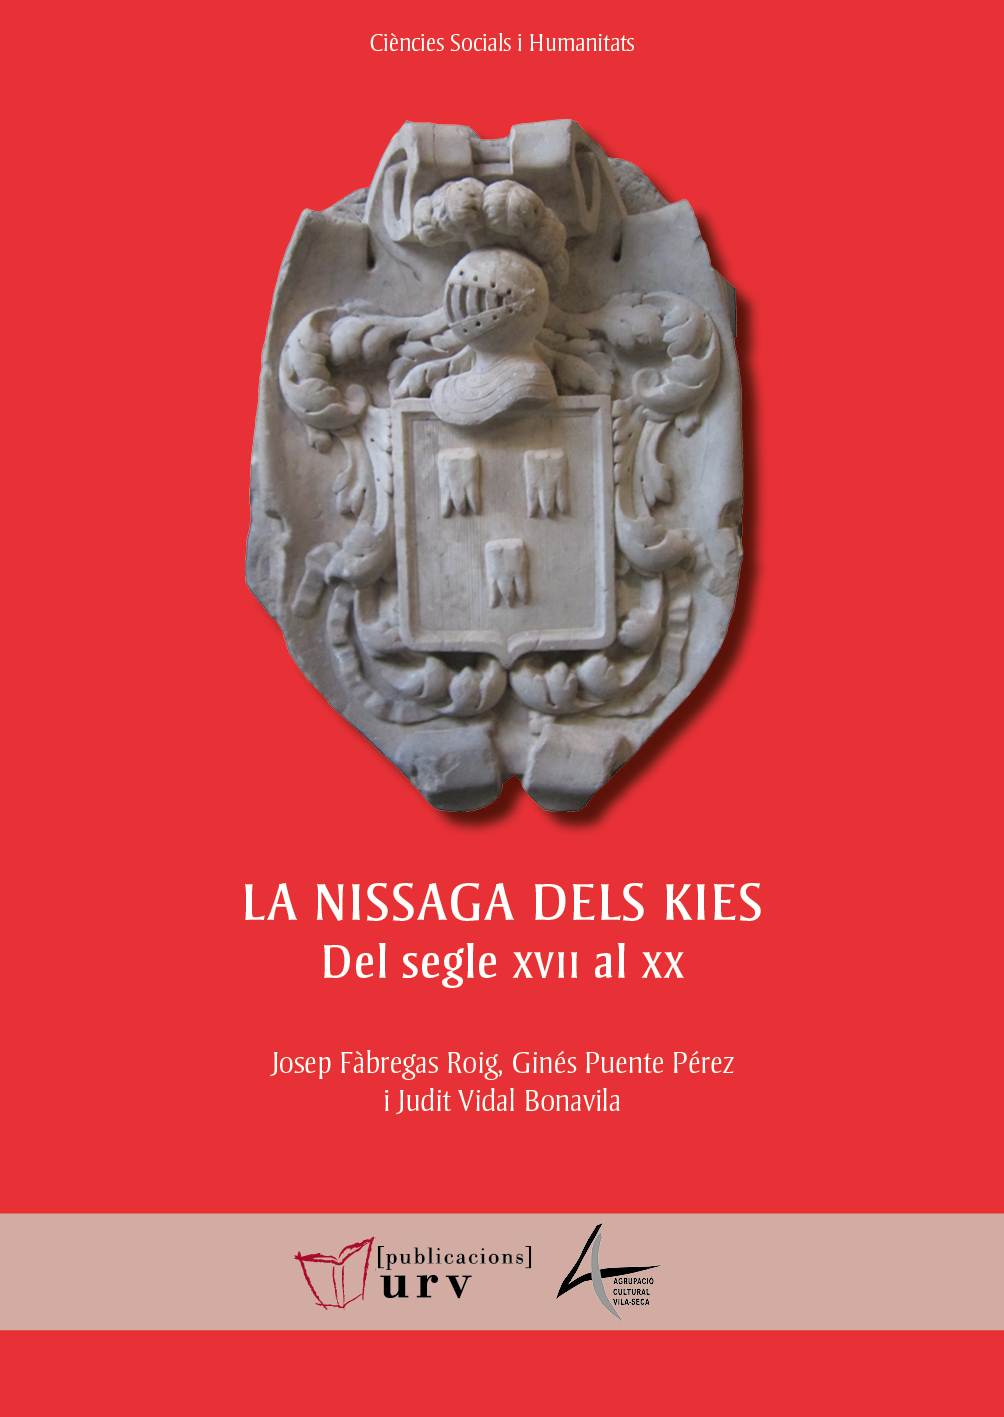 La nissaga dels Kies: del segle XVII al XX